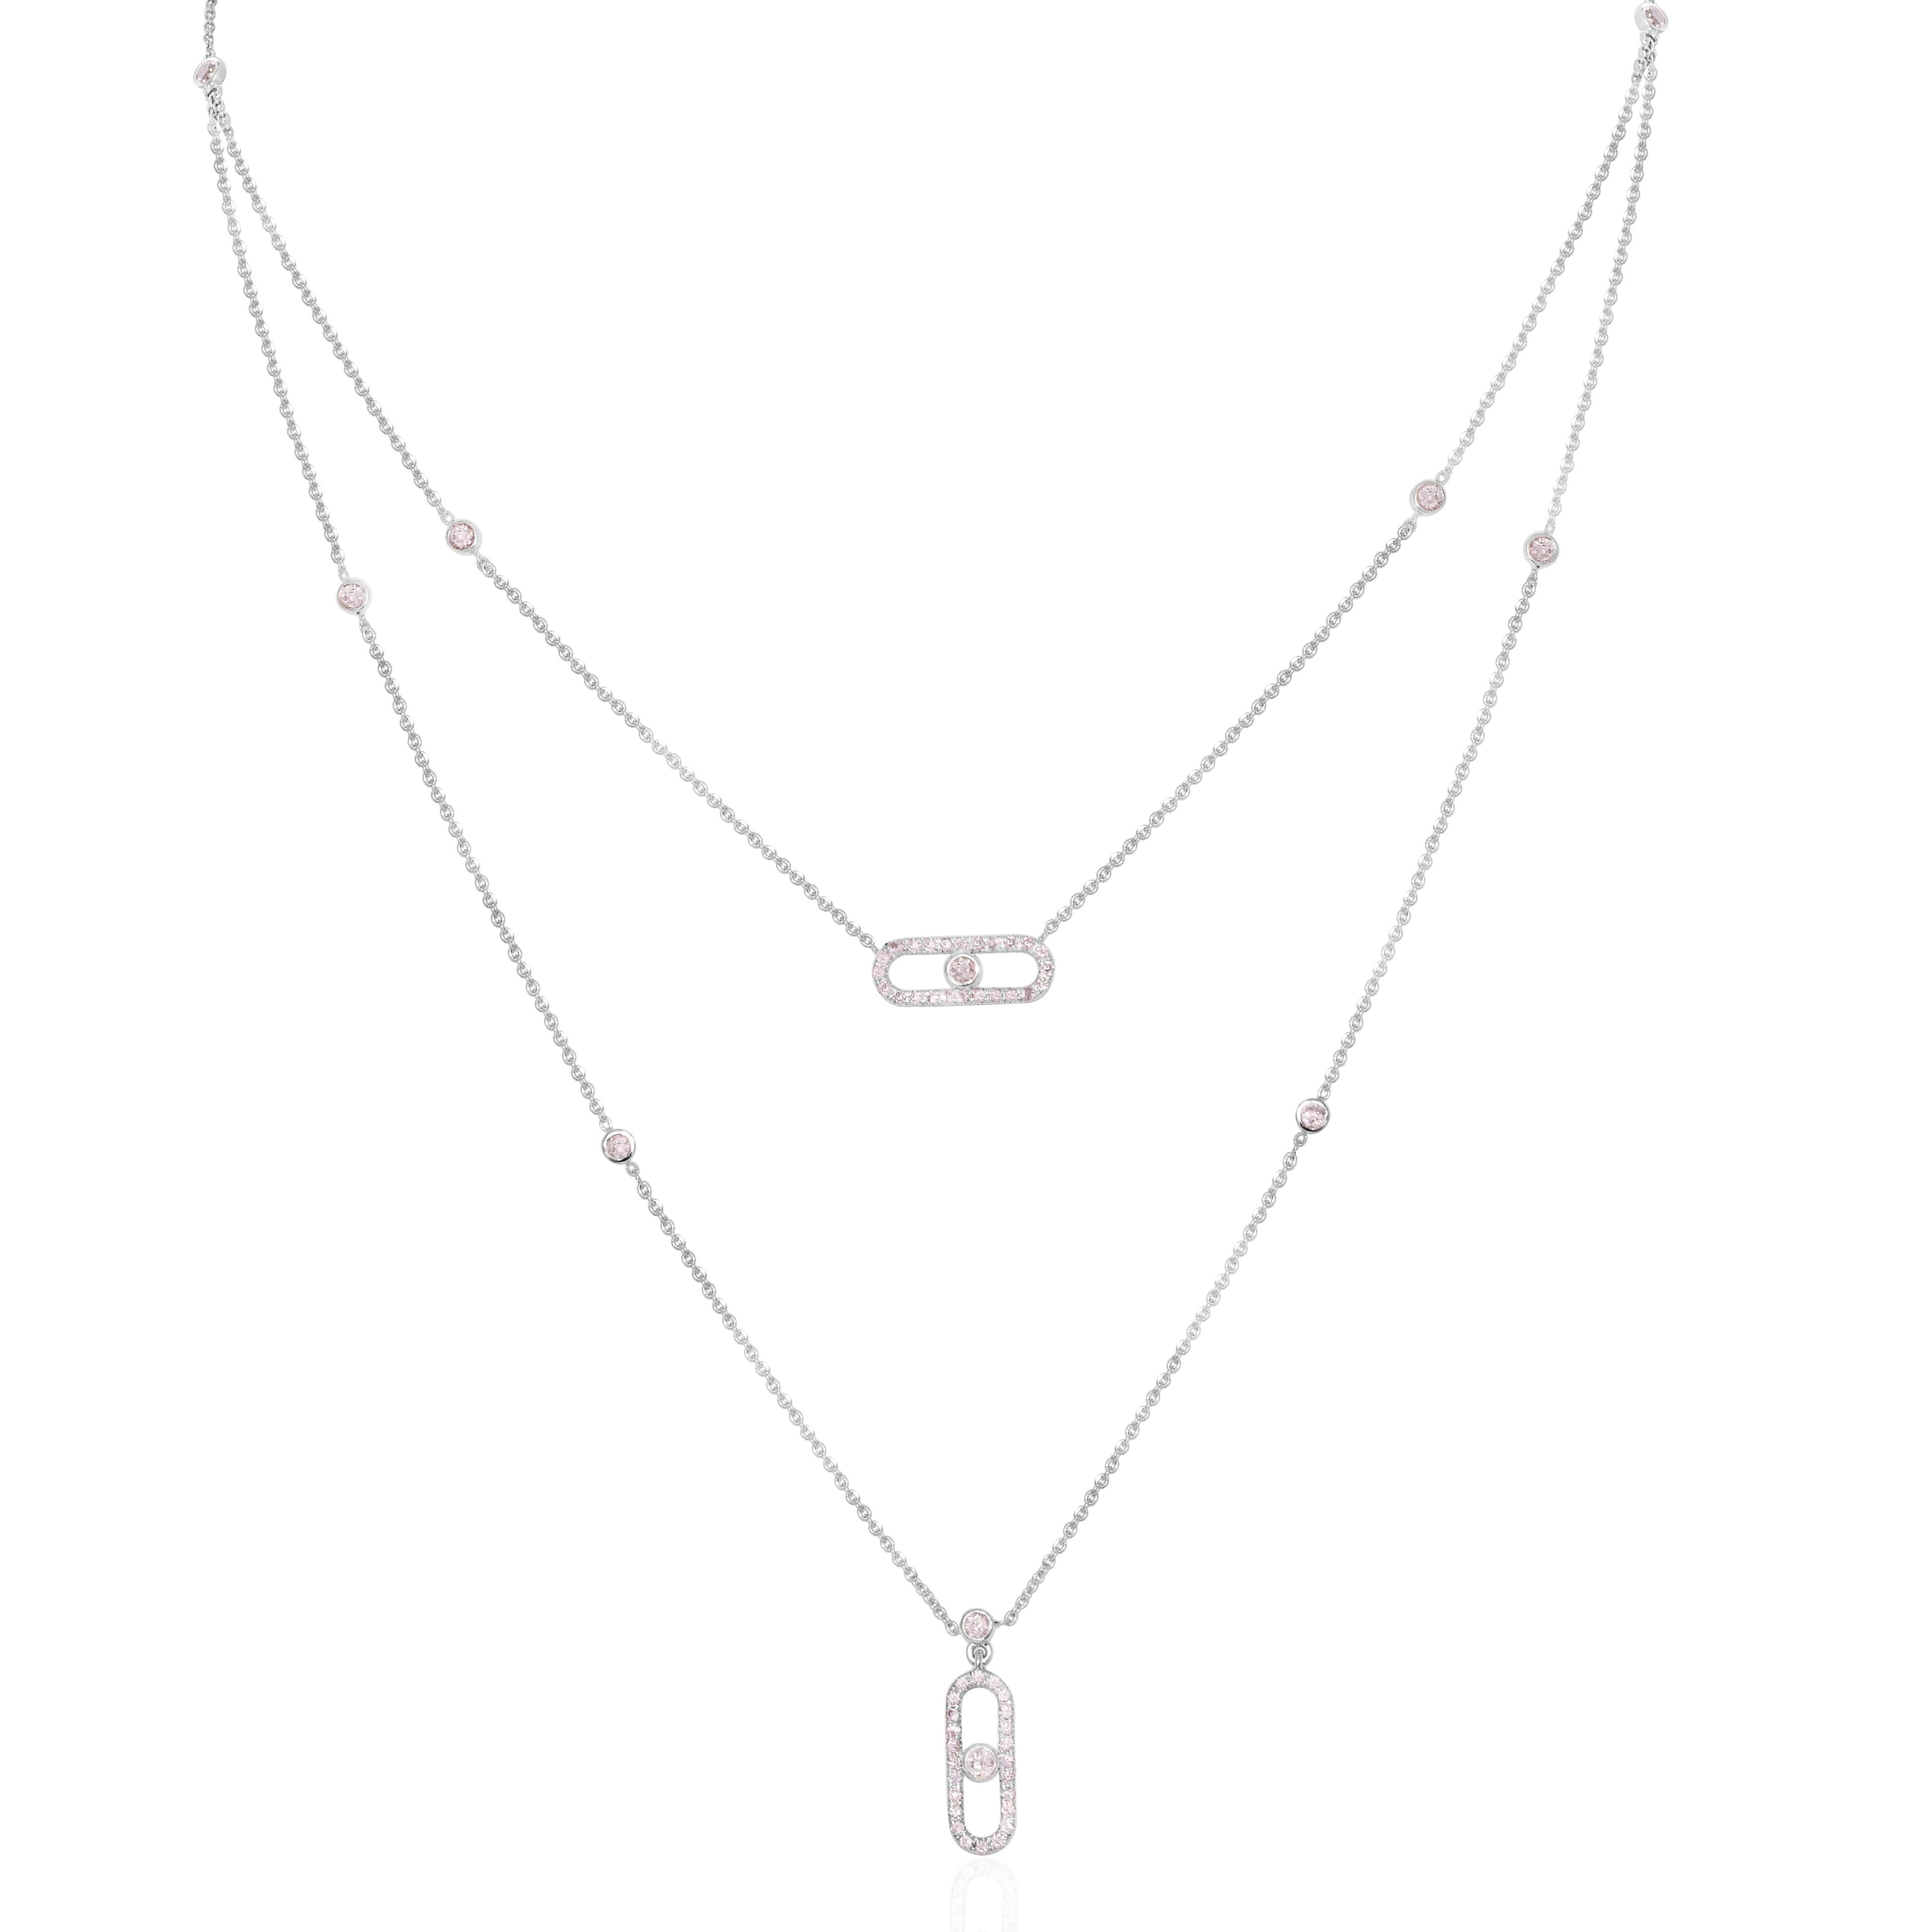 *IGI 14K 0,80 ct natürliche rosa Diamanten  Art Deco Design Halskette*

Dieses Band zeichnet sich durch ein atemberaubendes Art-Deco-Design aus, das aus 14 Karat Weißgold gefertigt ist. Er ist mit natürlichen rosa Diamanten von 0.80 Karat